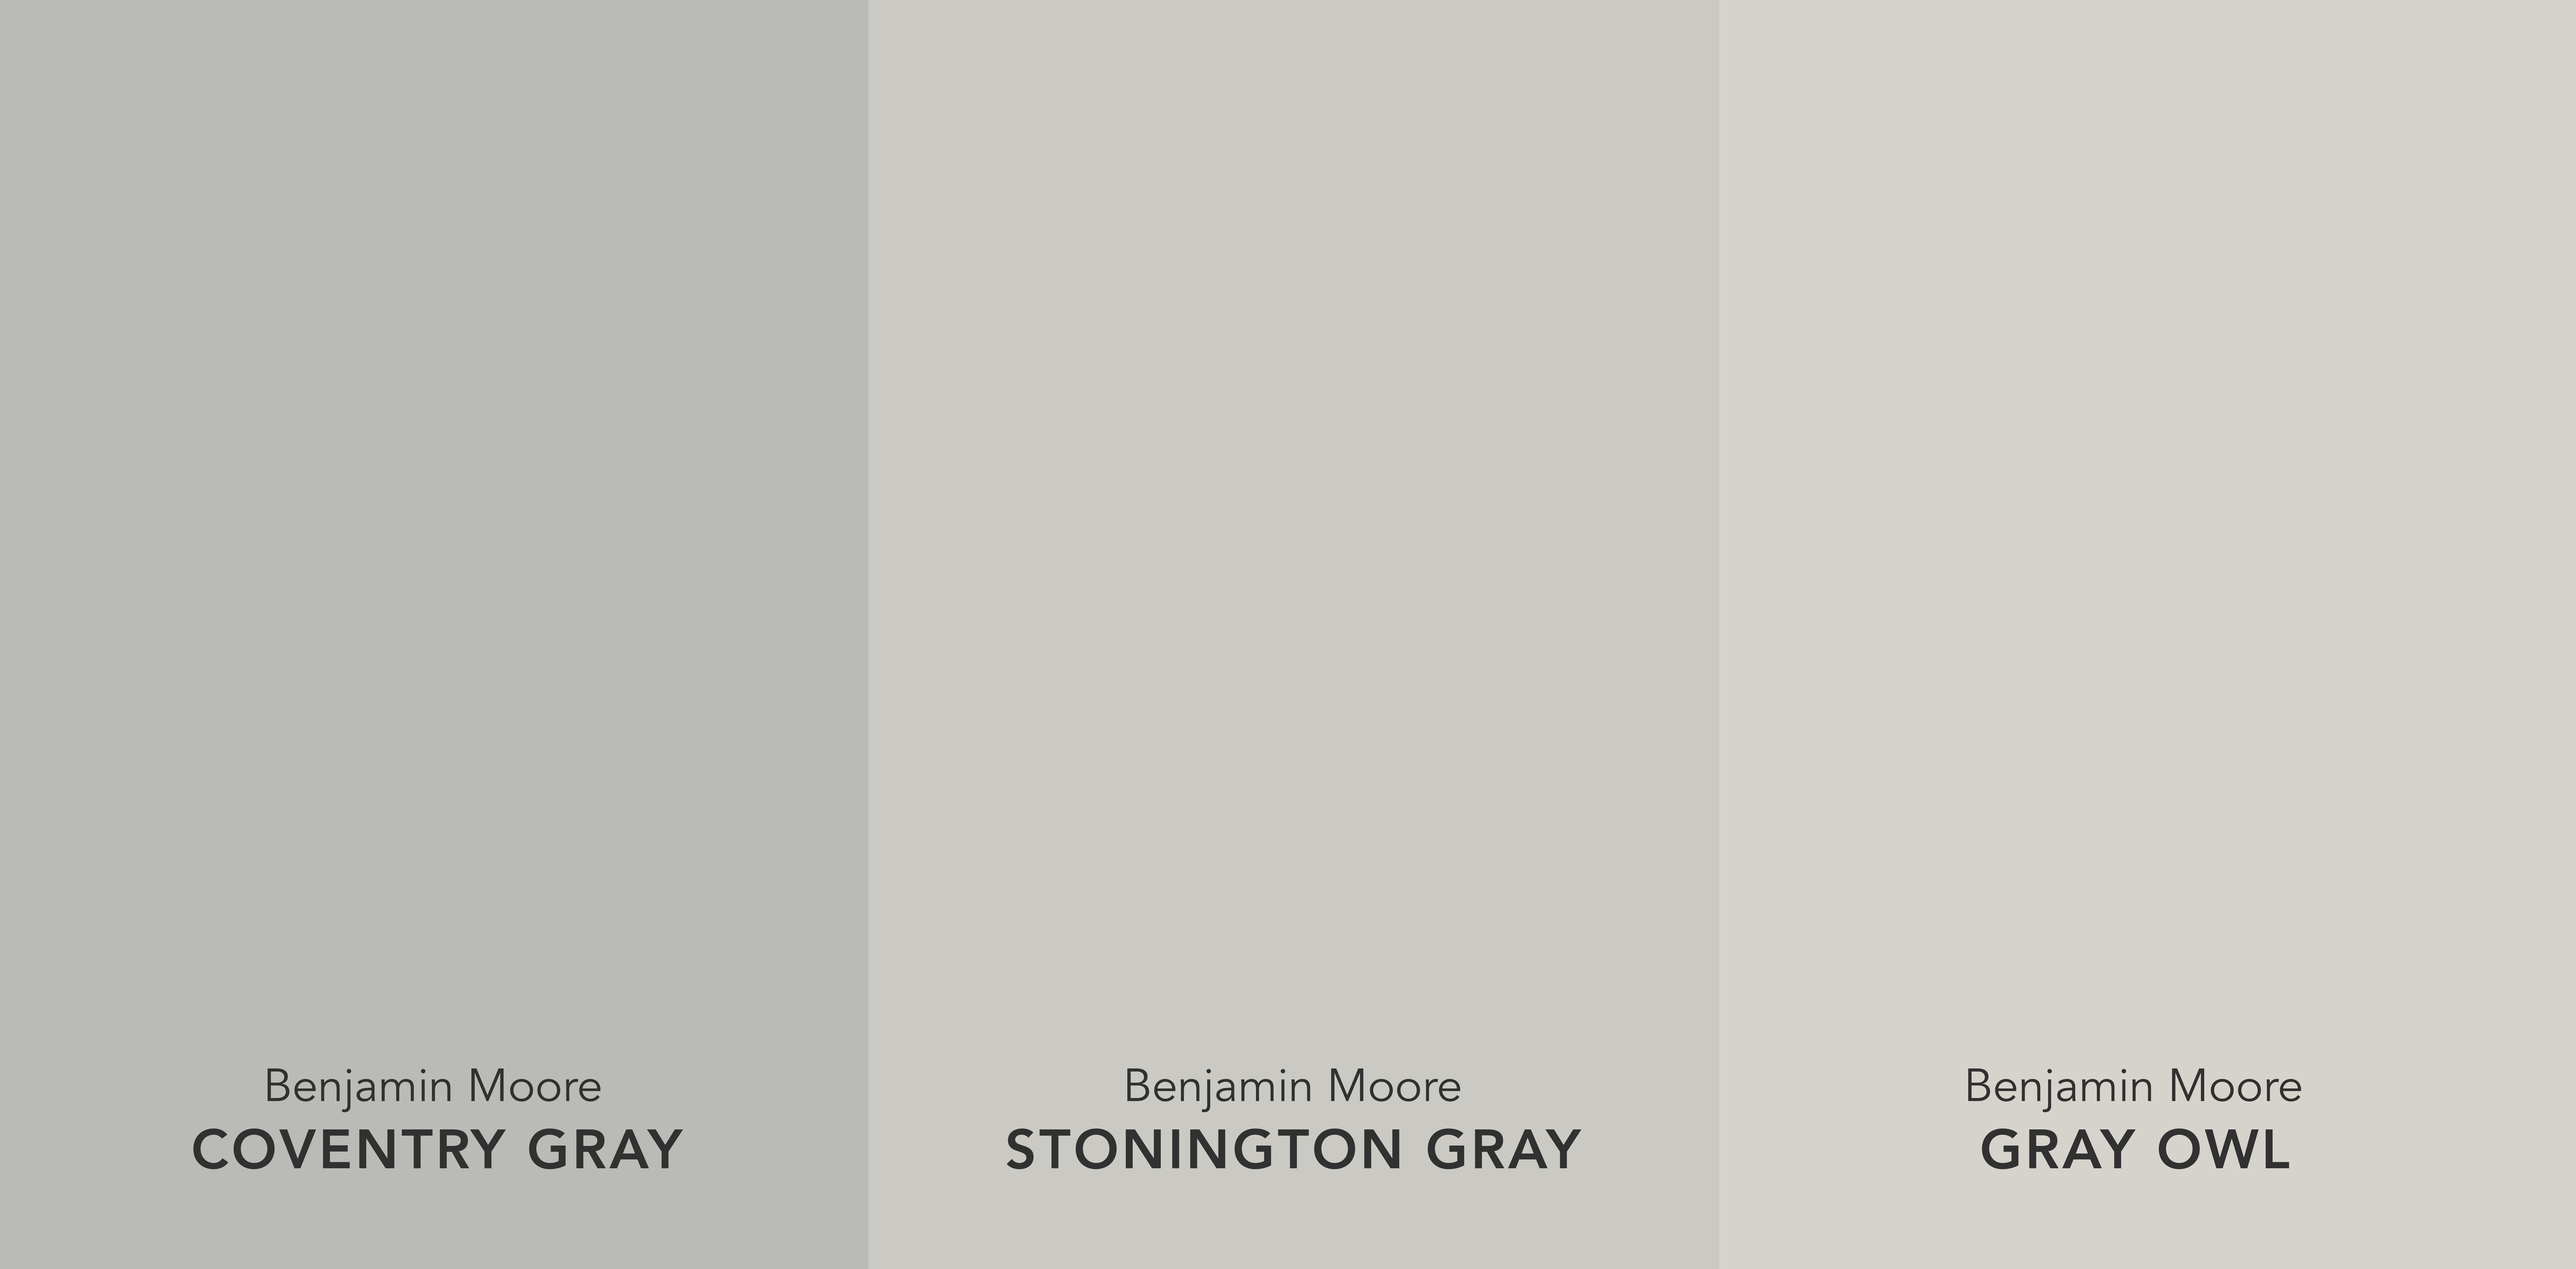 Benjamin Moore Coventry Gray vs. Stonington Gray vs. Gray Owl